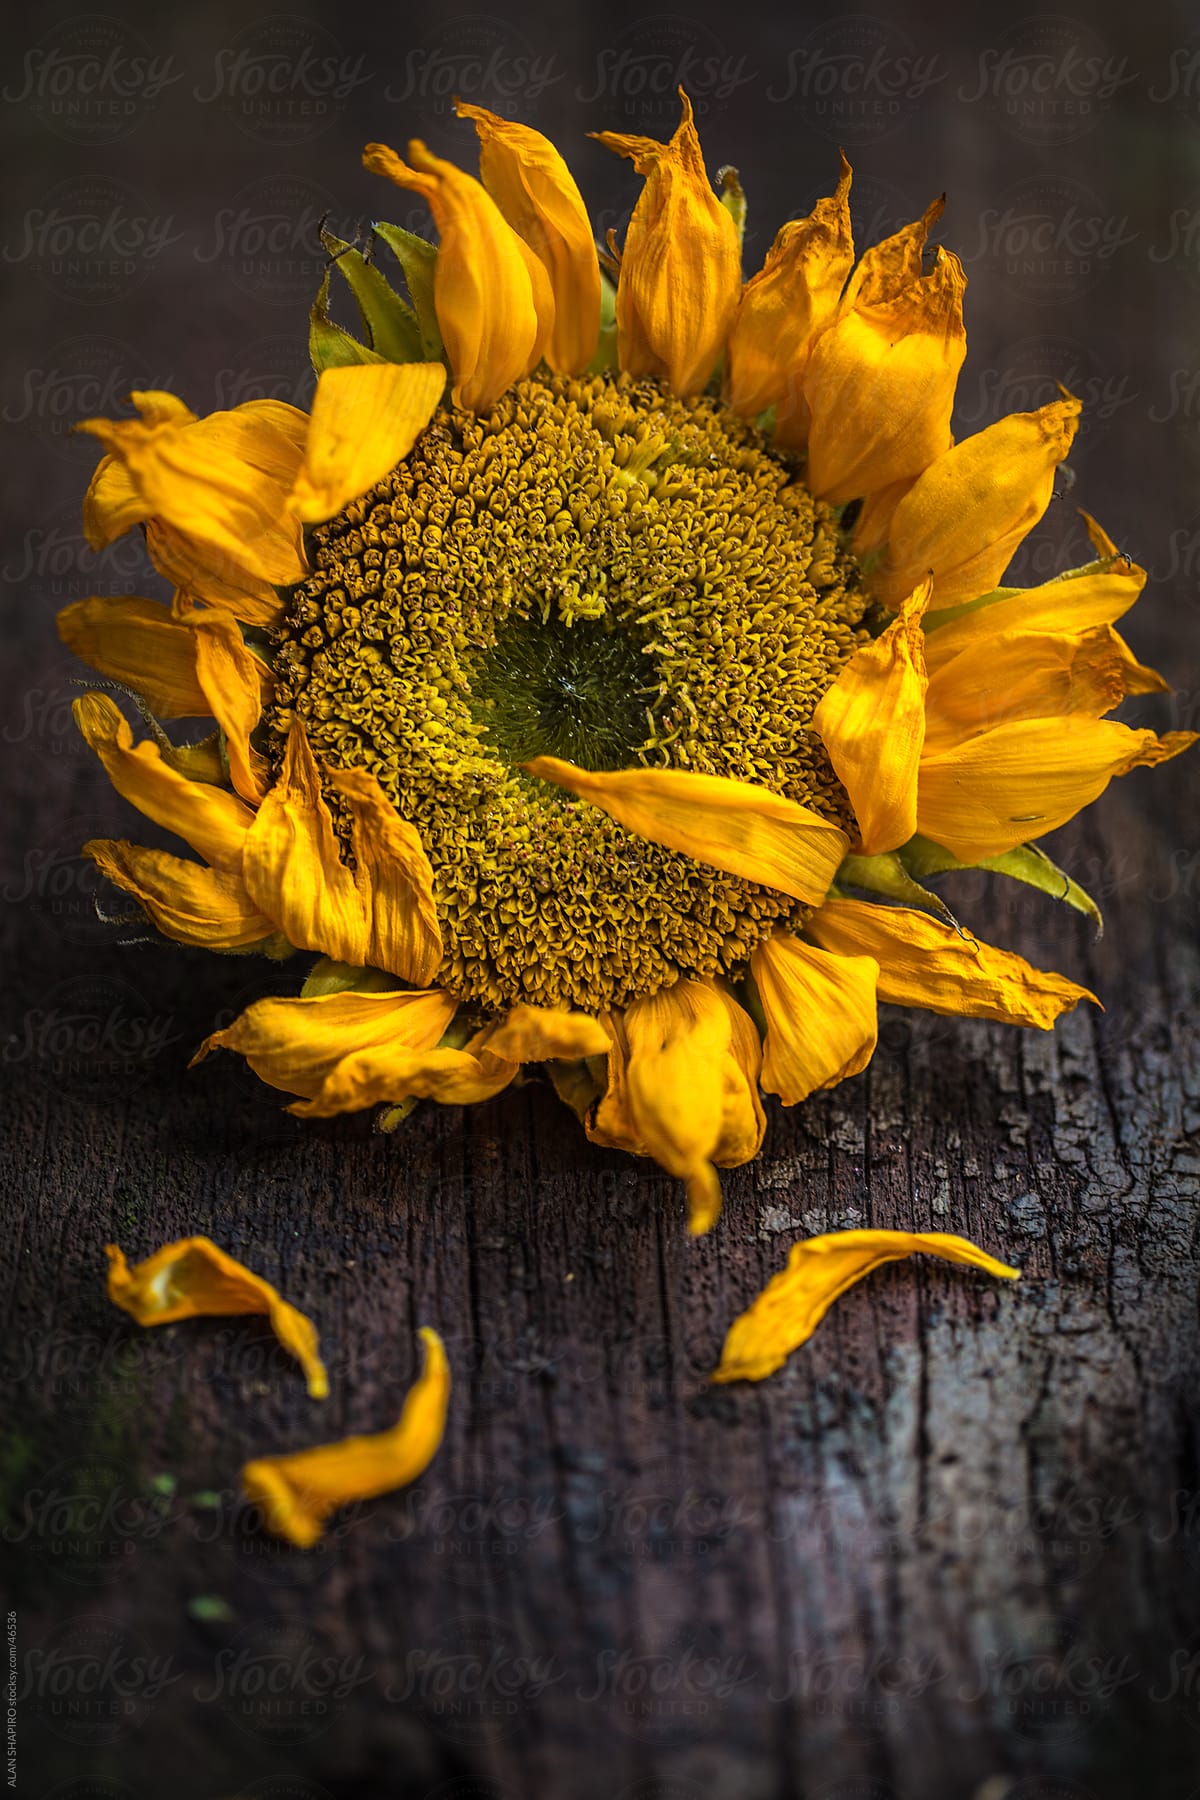 Sunflower feeling frazzled